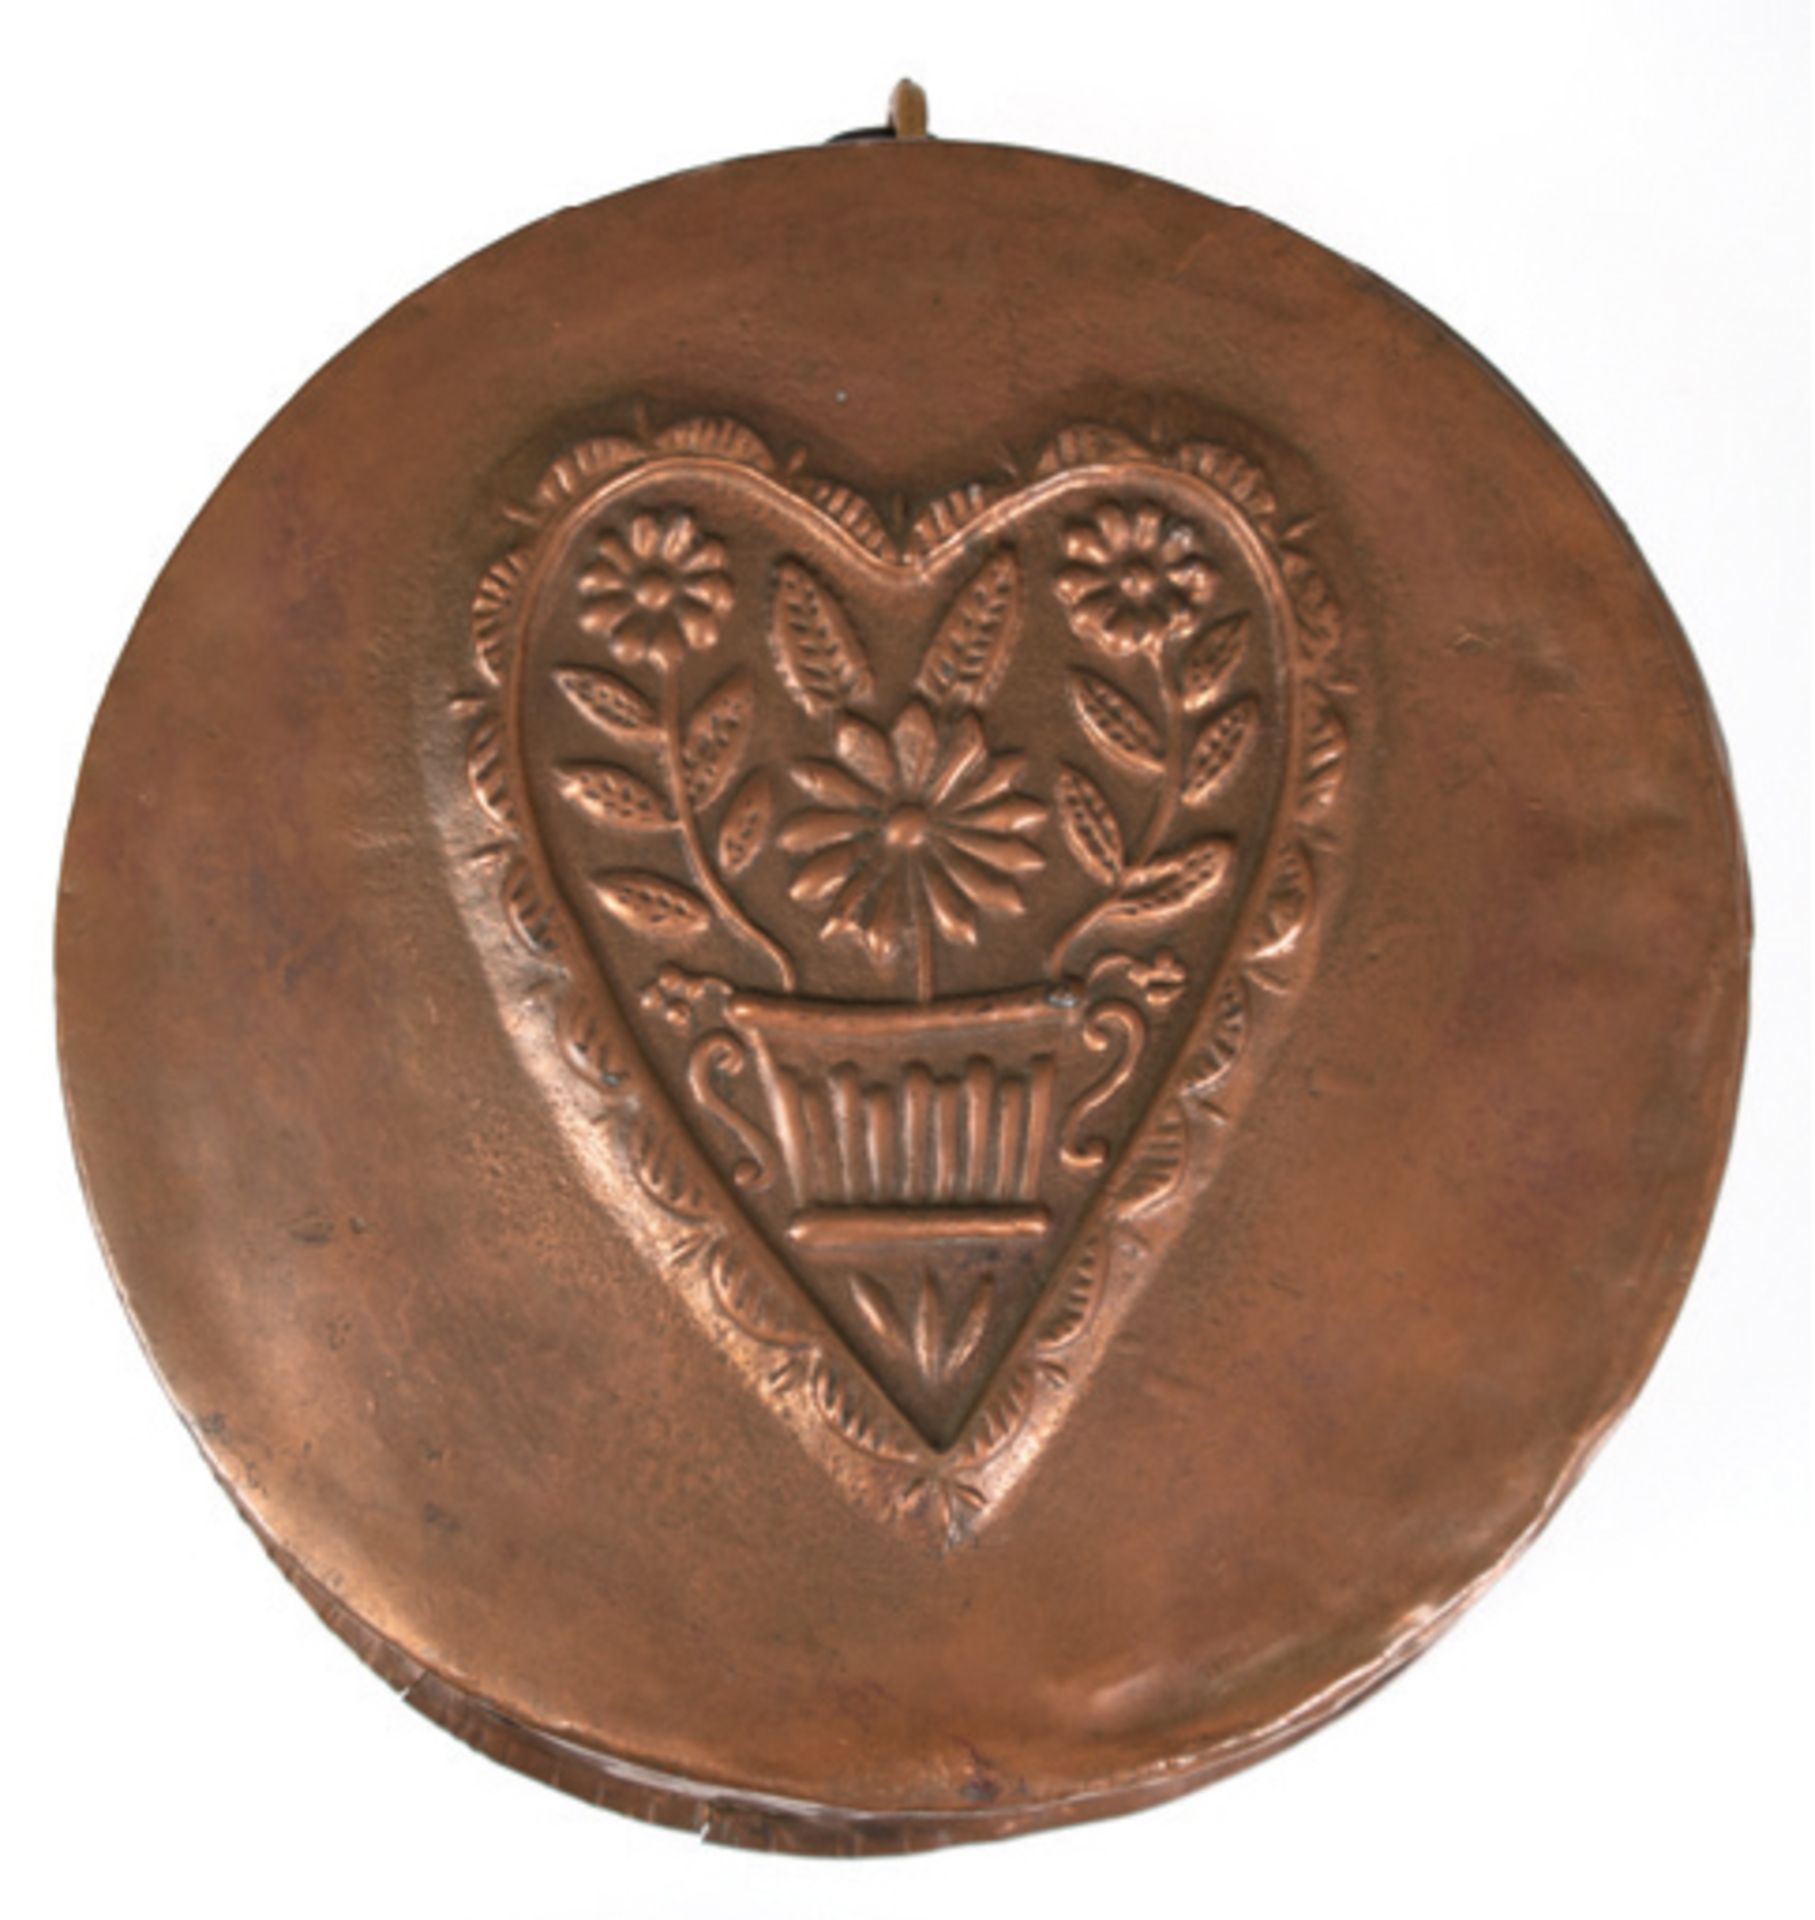 Kupfer-Form, 19. Jh., mit Herz- und Blumendekor, Ringaufhängung, Gebrauchspuren, Innen-Dm. 36 cm